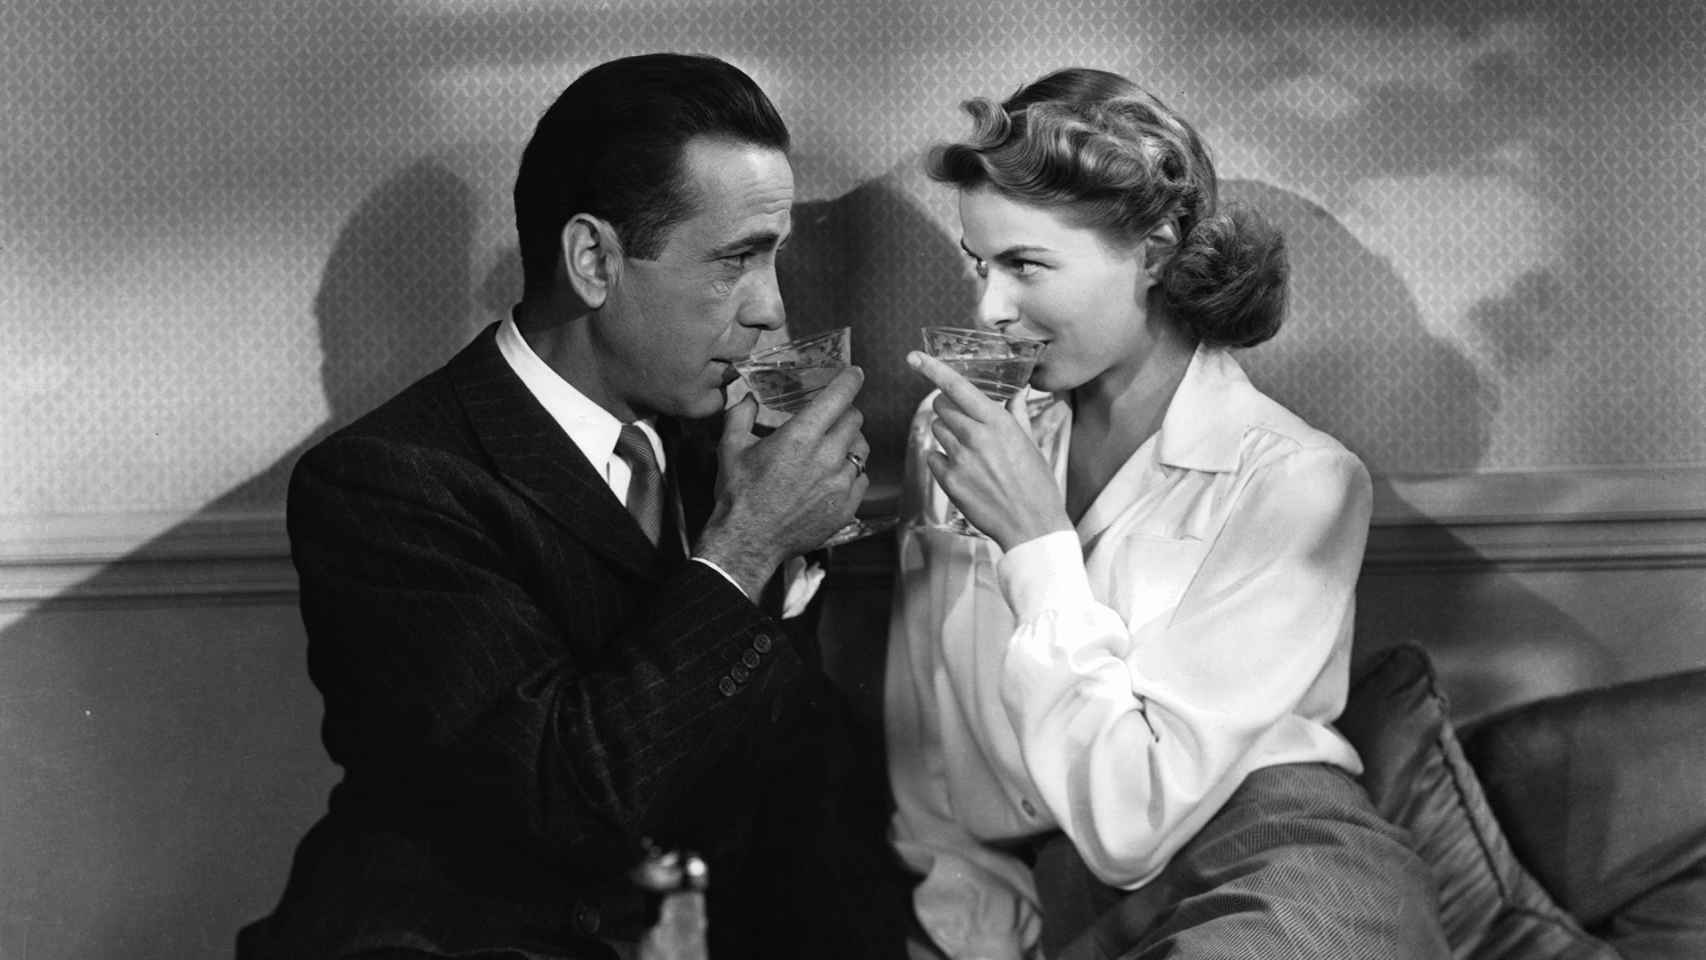 Humphrey Bogart, que aseguró que no se fiaba de quien no bebía alcohol, tomando una copa junto a Ingrid Bergman en una escena de 'Casablanca', película dirigida por Michael Curtiz